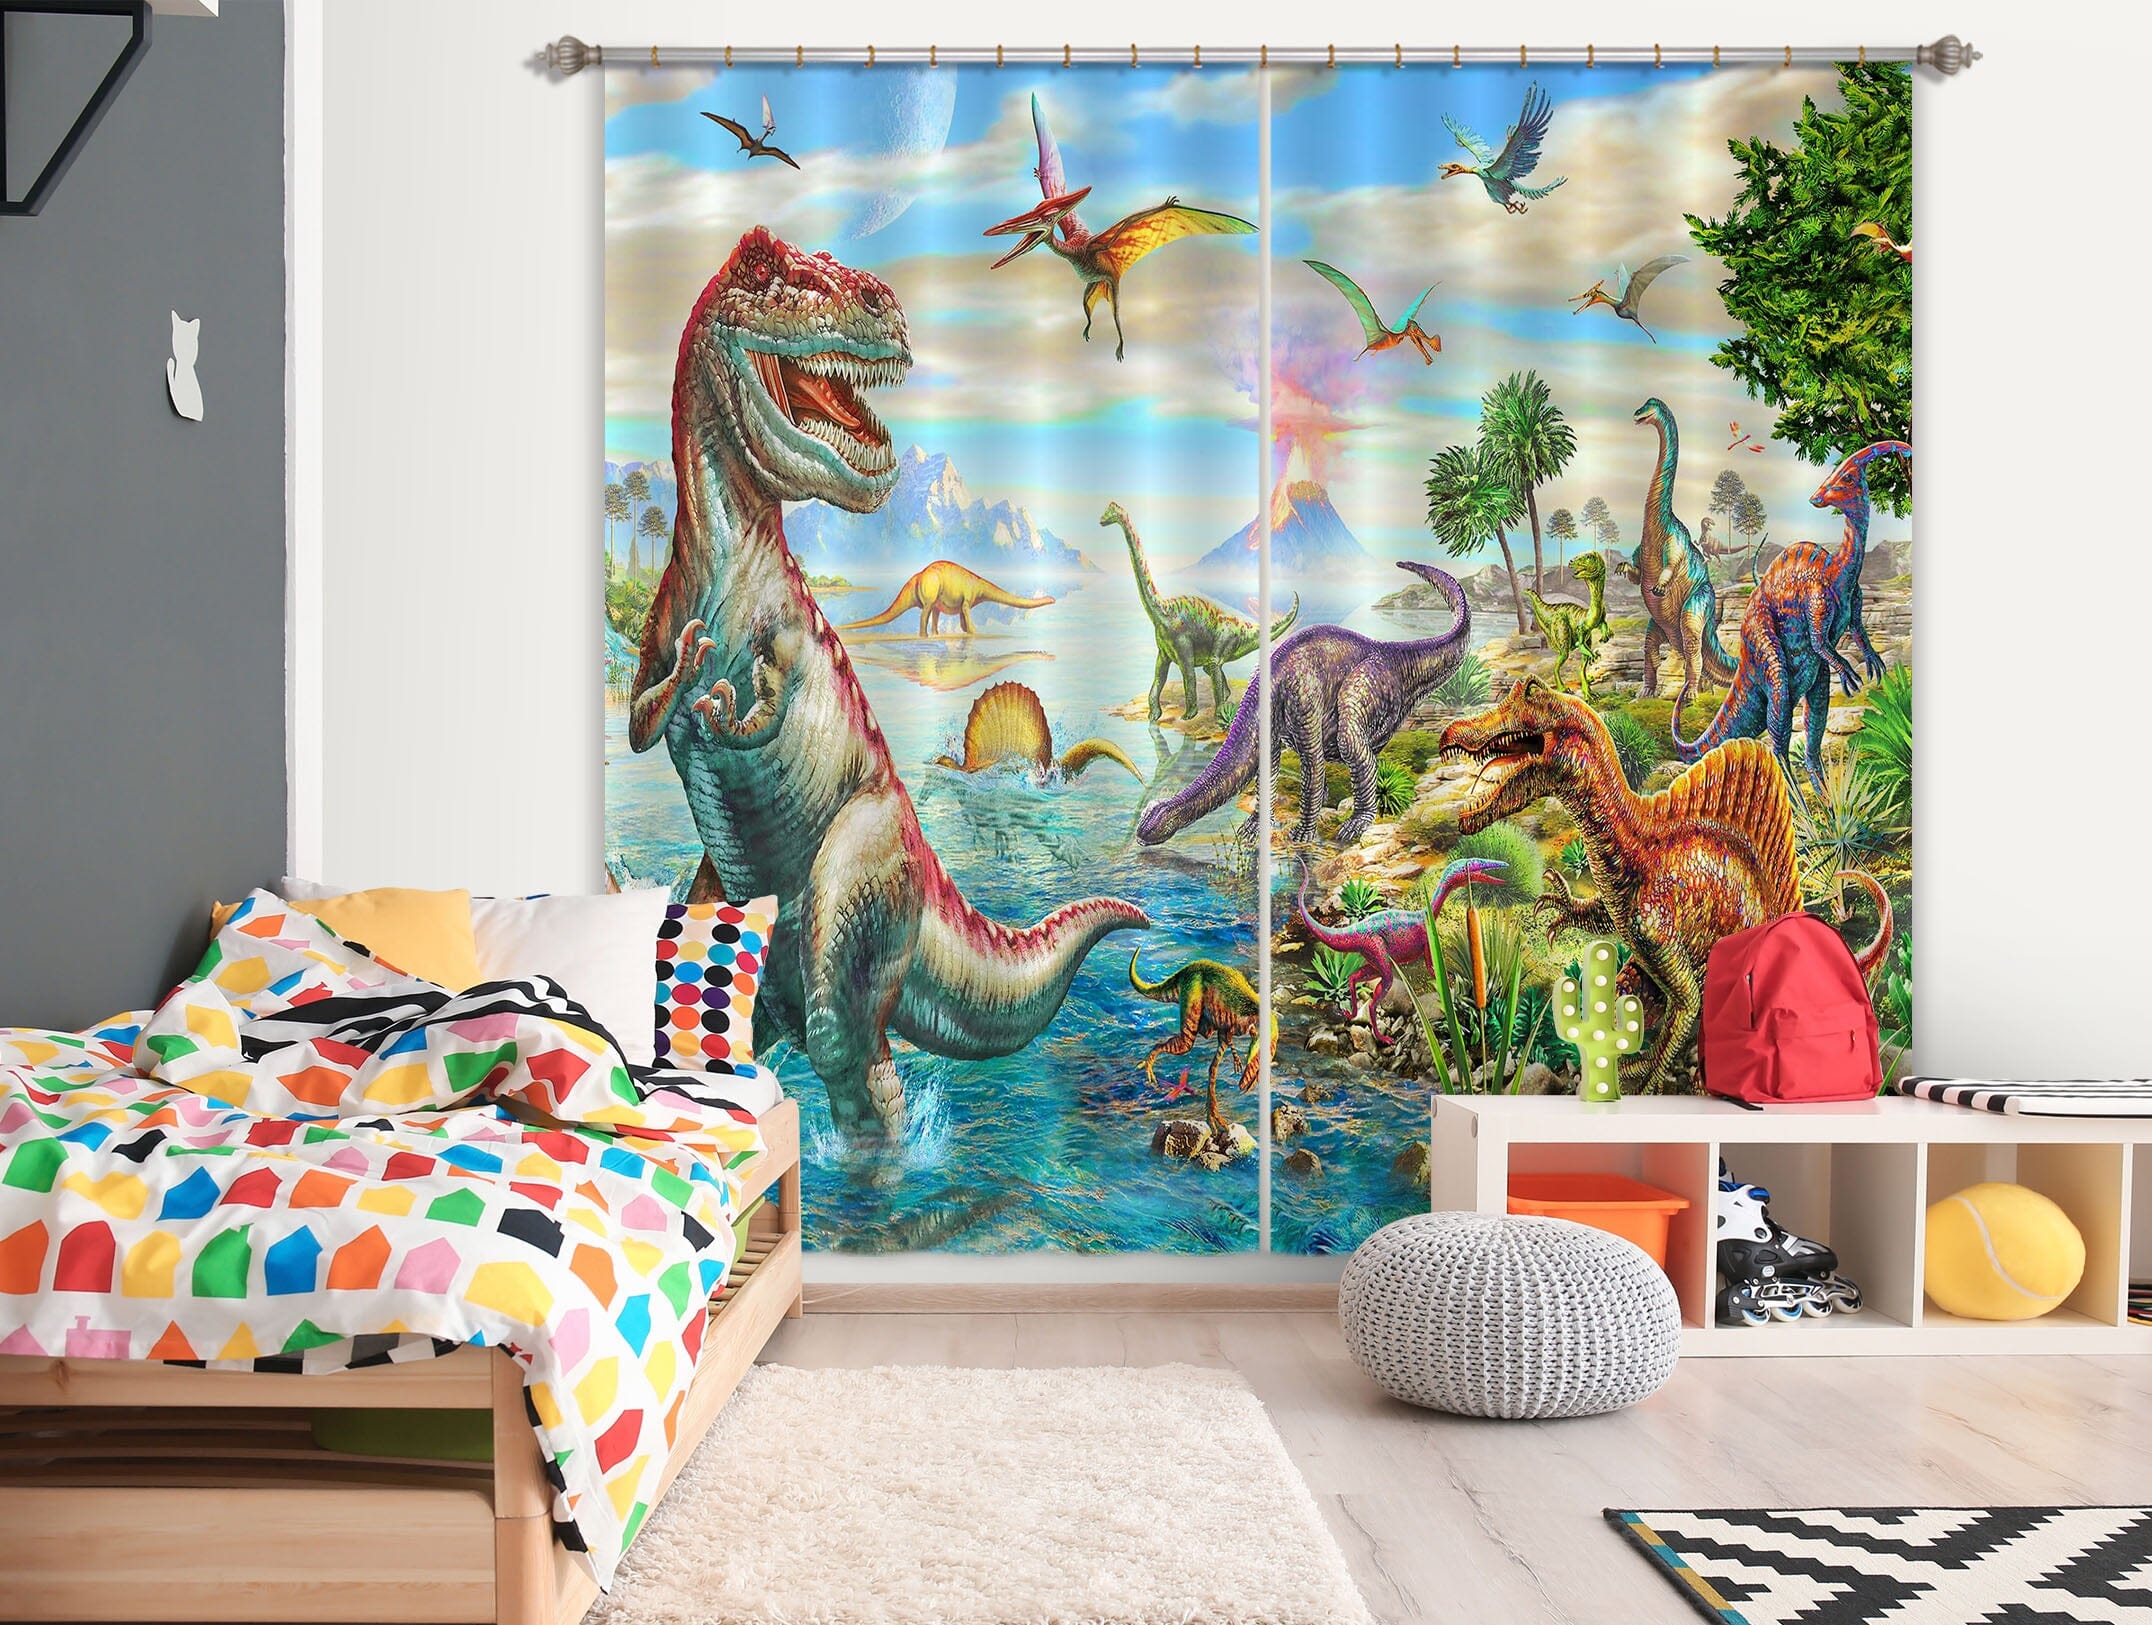 3D Dinosaur Falls 059 Adrian Chesterman Curtain Curtains Drapes Curtains AJ Creativity Home 